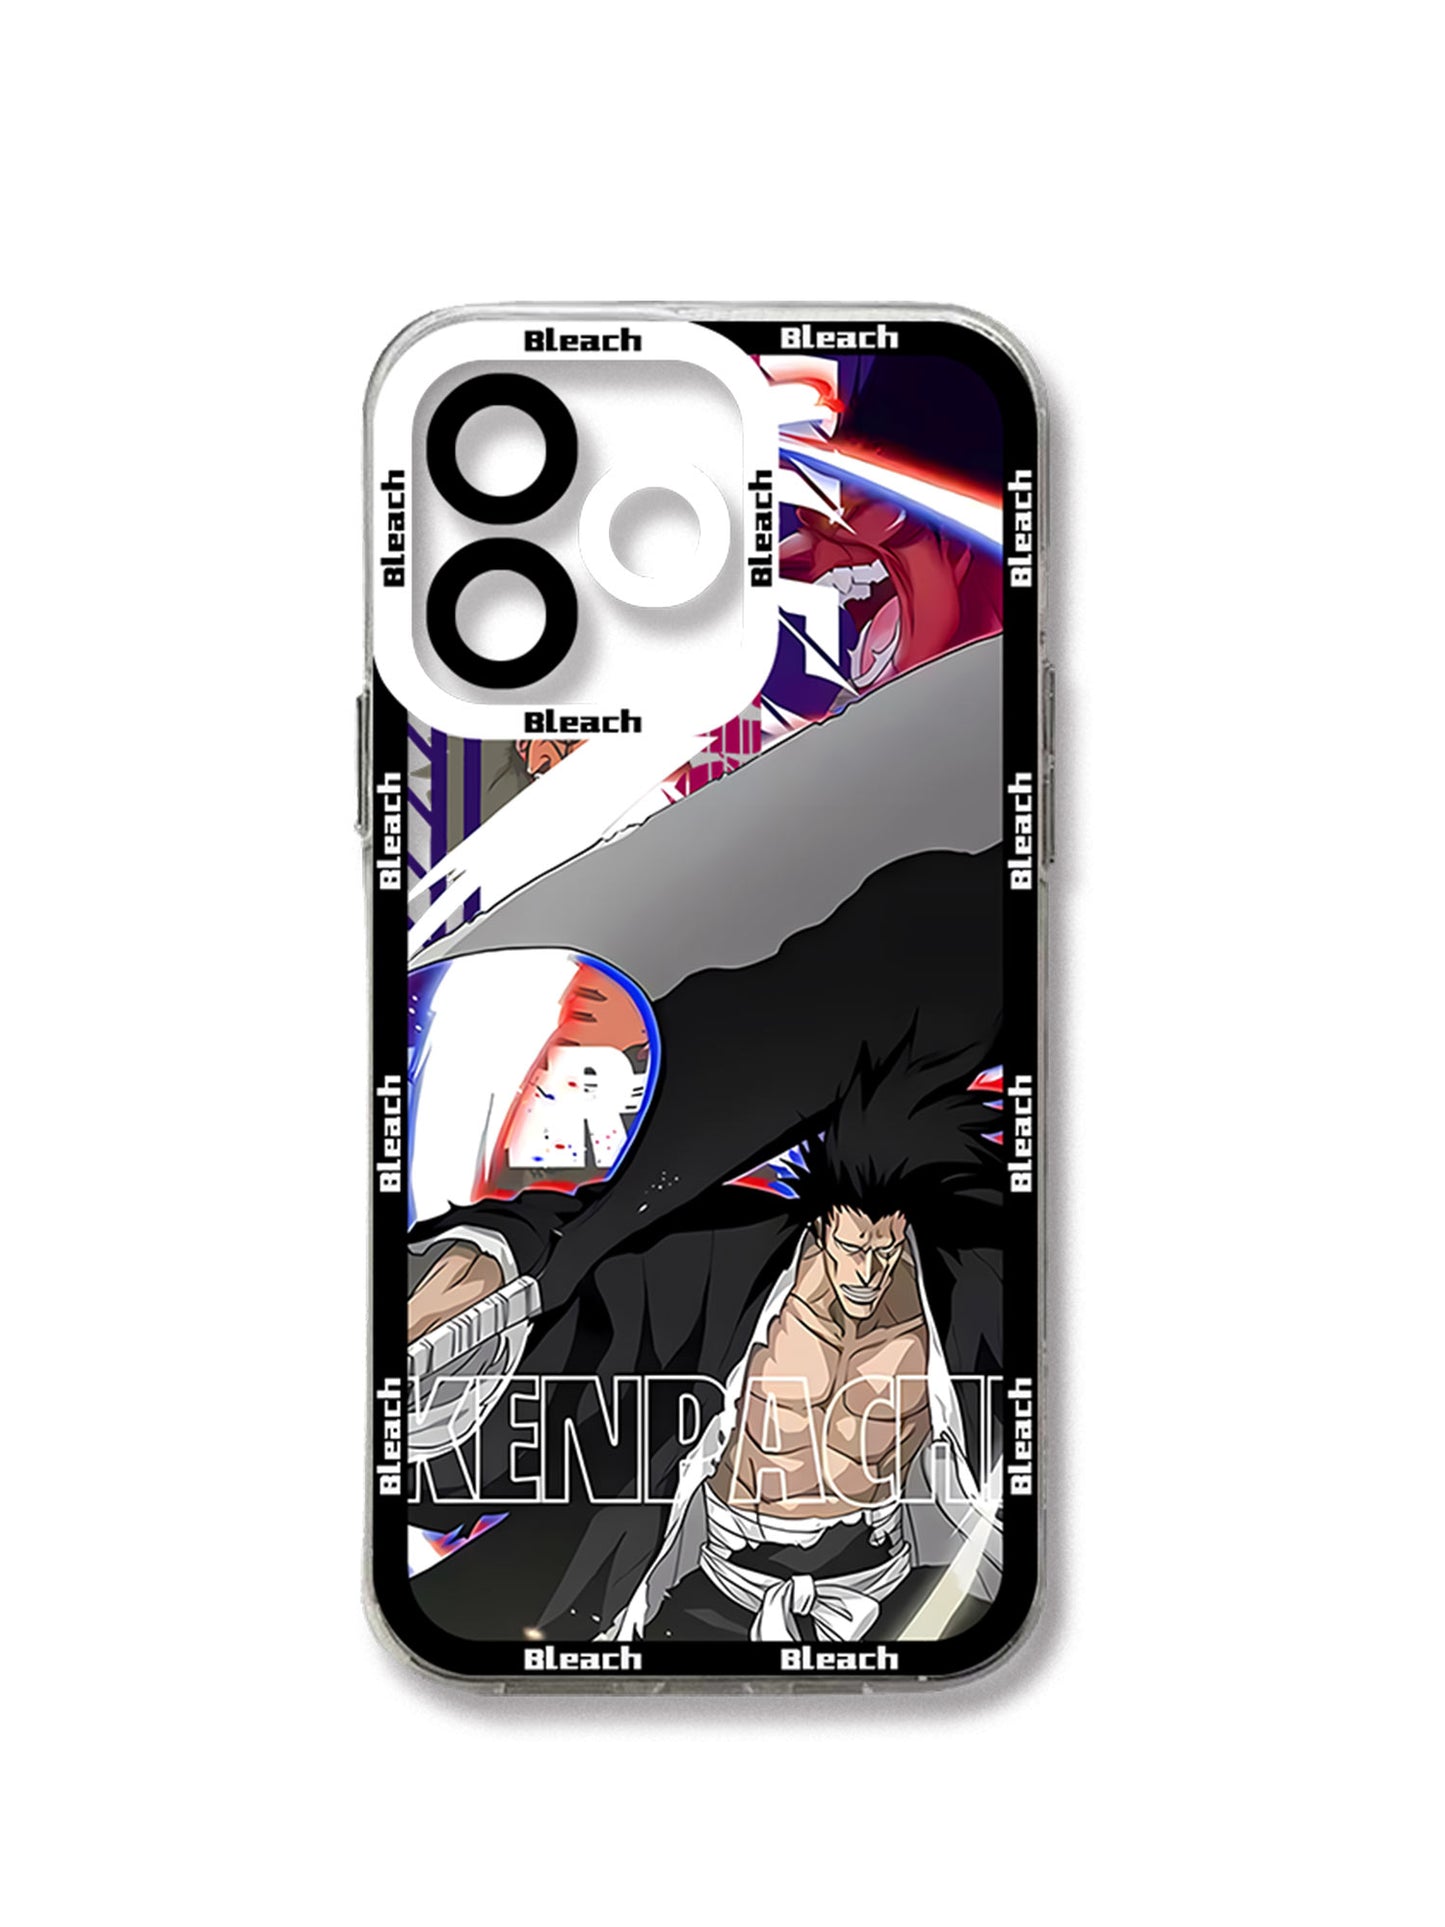 Ichigo phone cases for IPhones